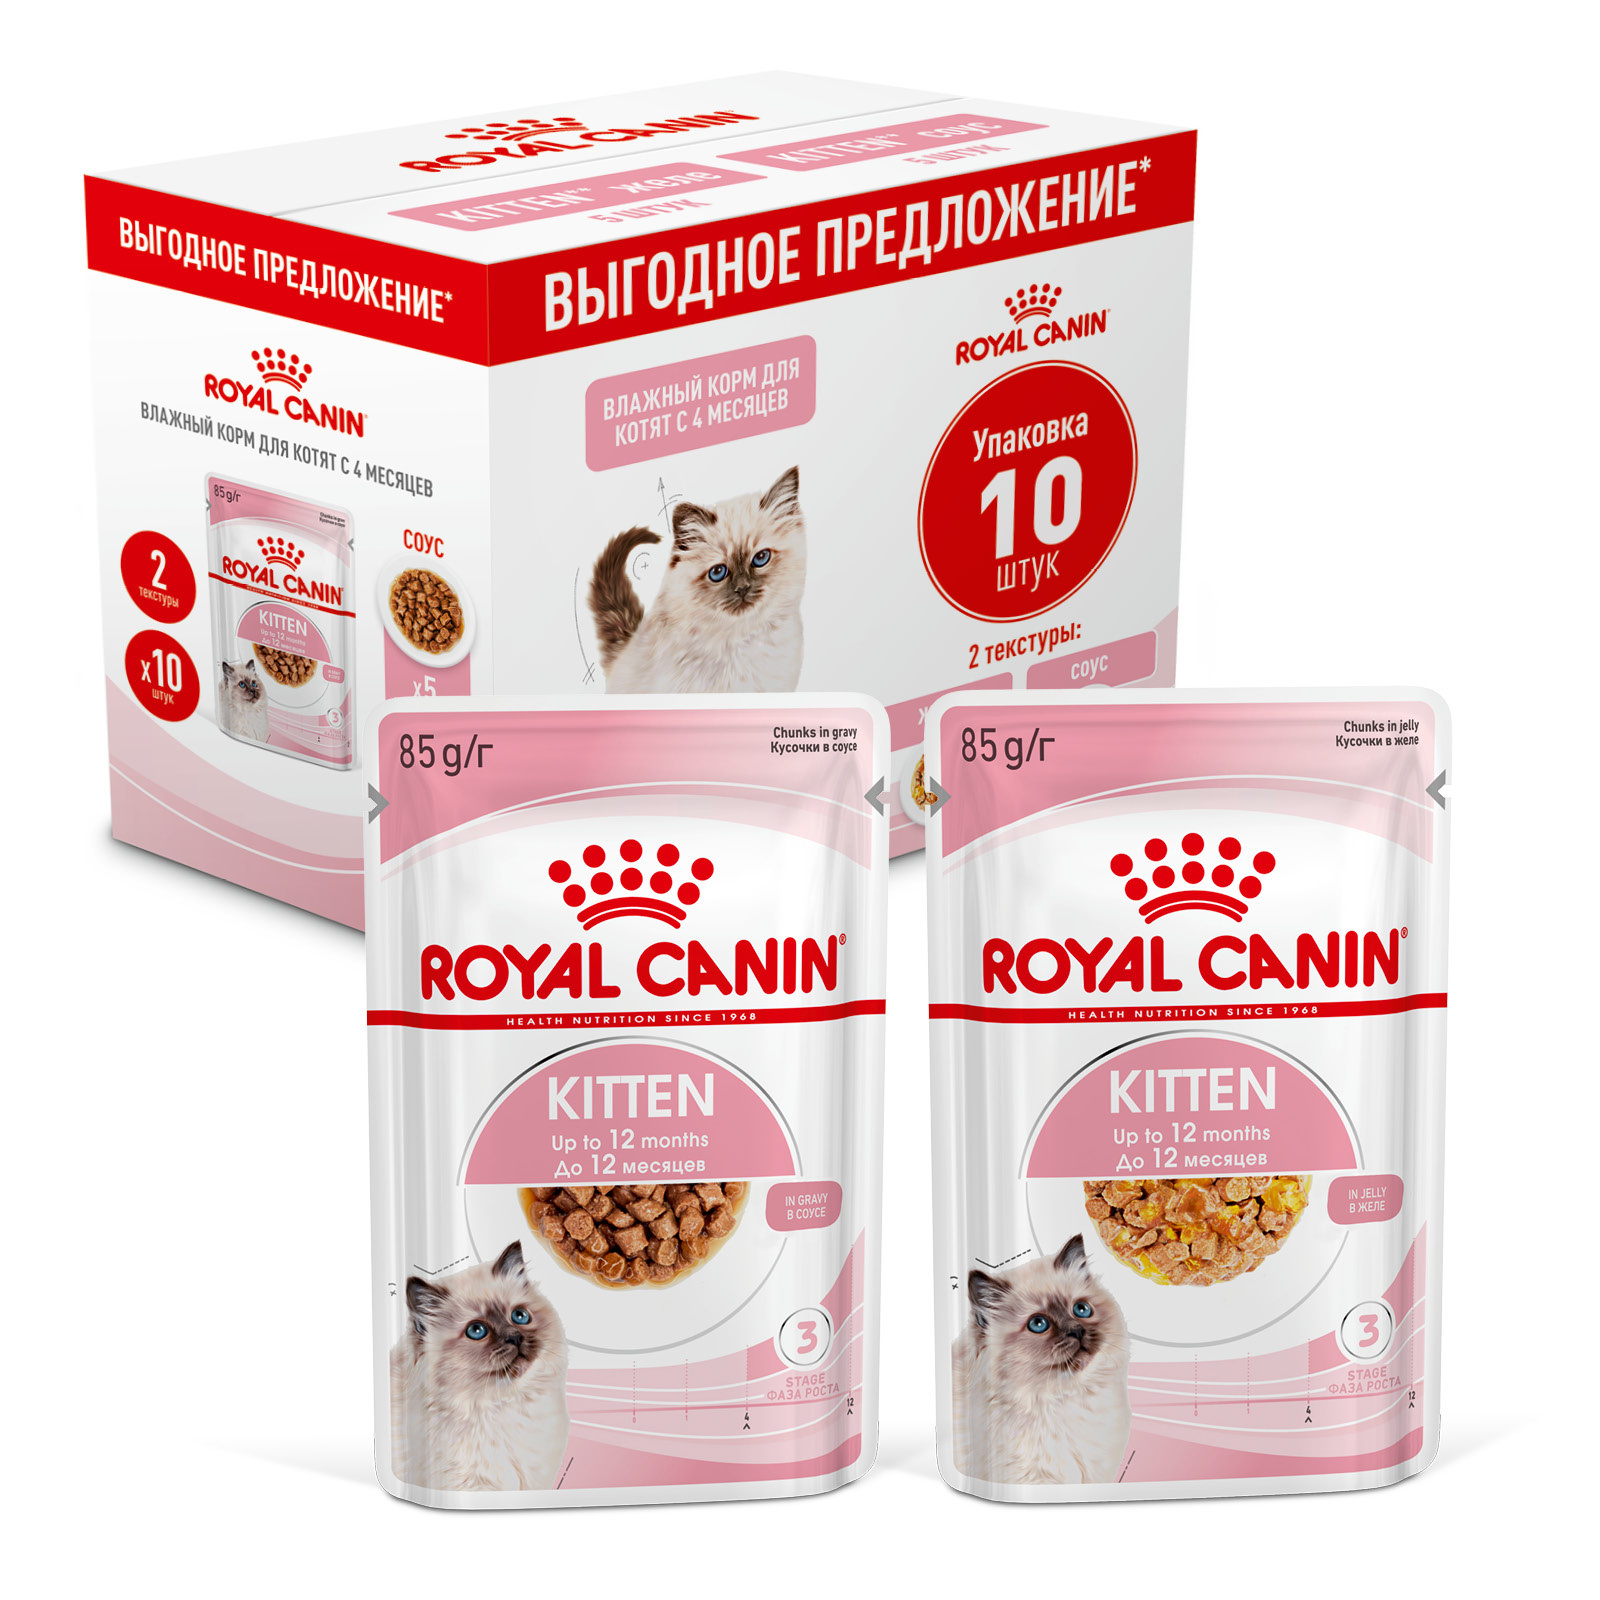 Royal Canin паучи Royal Canin паучи мультипак Паучи кусочки в соусе 5 шт + Паучи кусочки в желе 5 шт для котят 4-12 мес. (850 г)